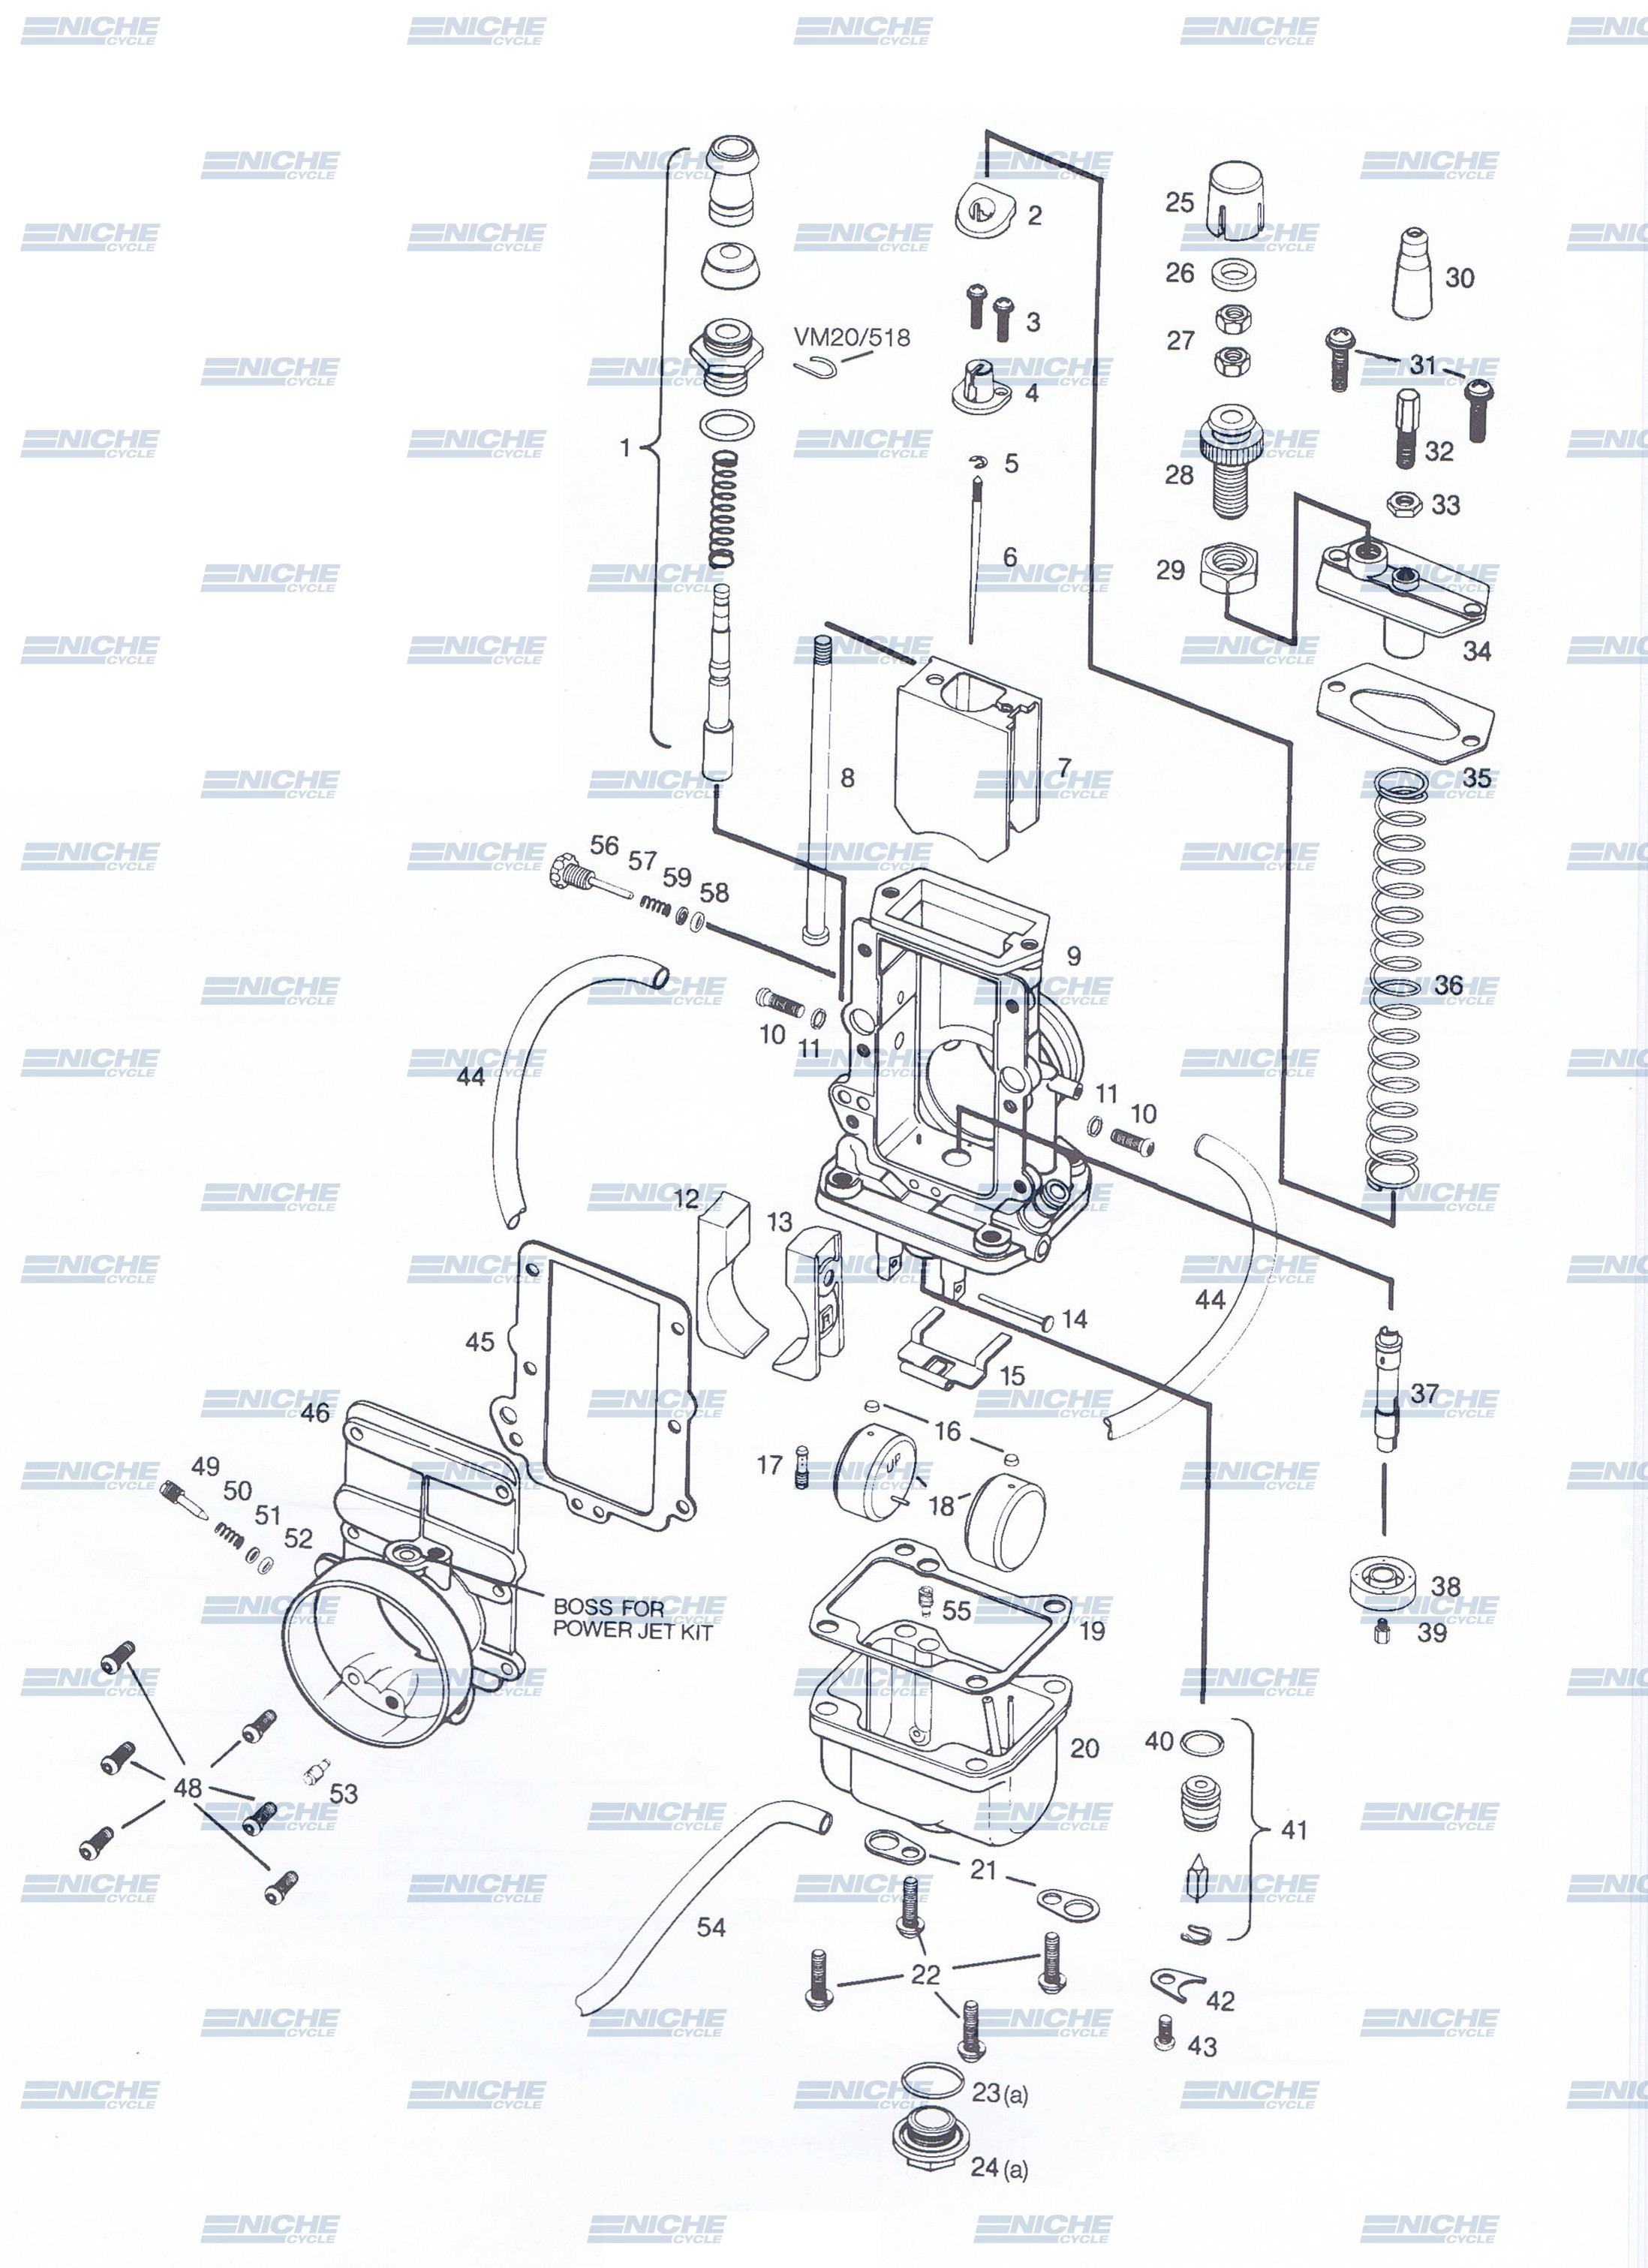 Mikuni TM38-86 Exploded View - Replacement Parts Listing TM38-86_parts_list